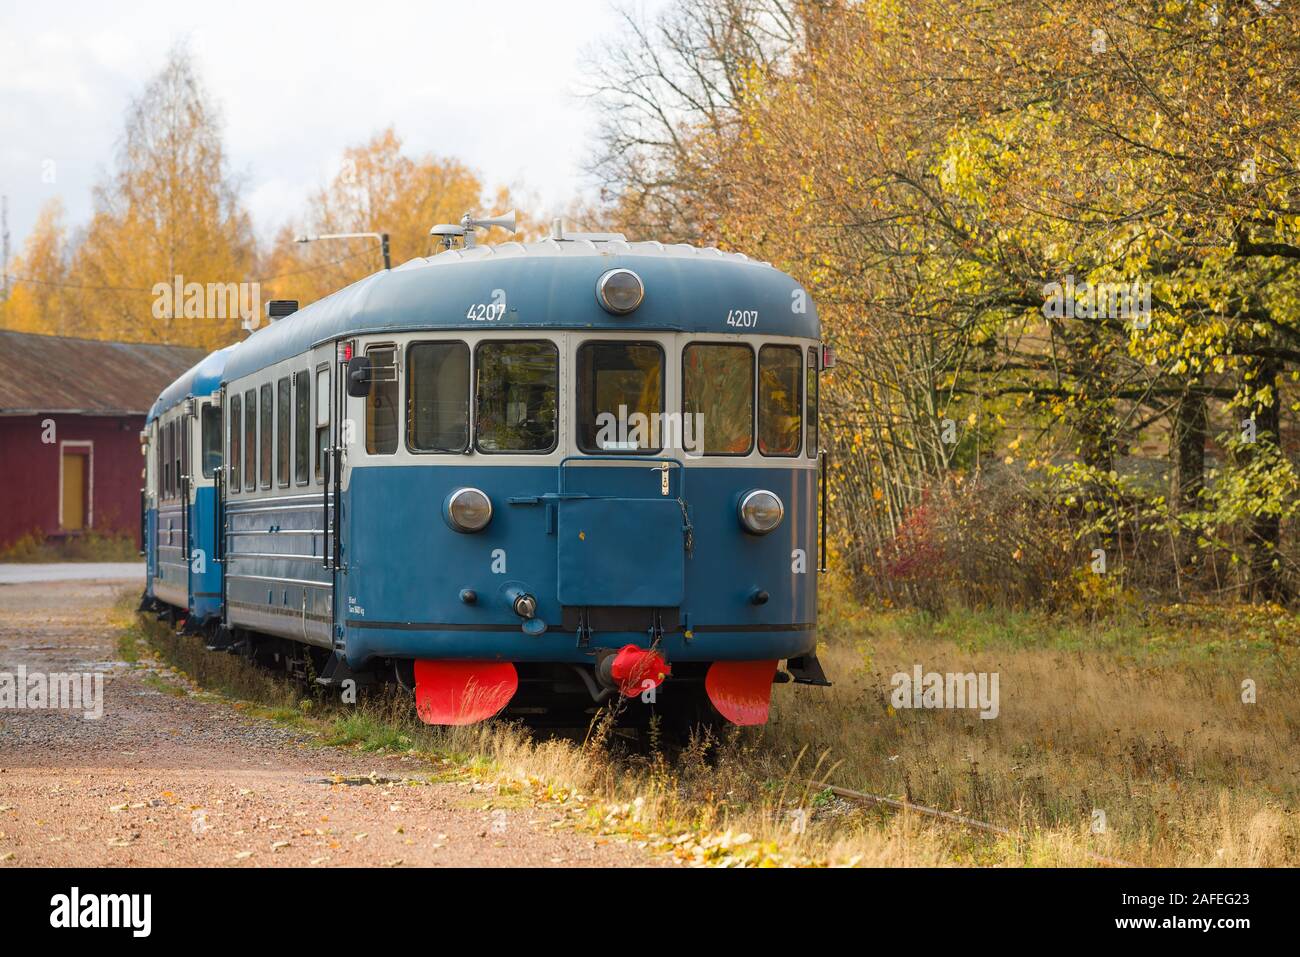 PORVOO, Finnland - 19. OKTOBER 2019: Passagier retro Zug close-up an der Alten Porvoo Bahnhof im goldenen Herbst Stockfoto